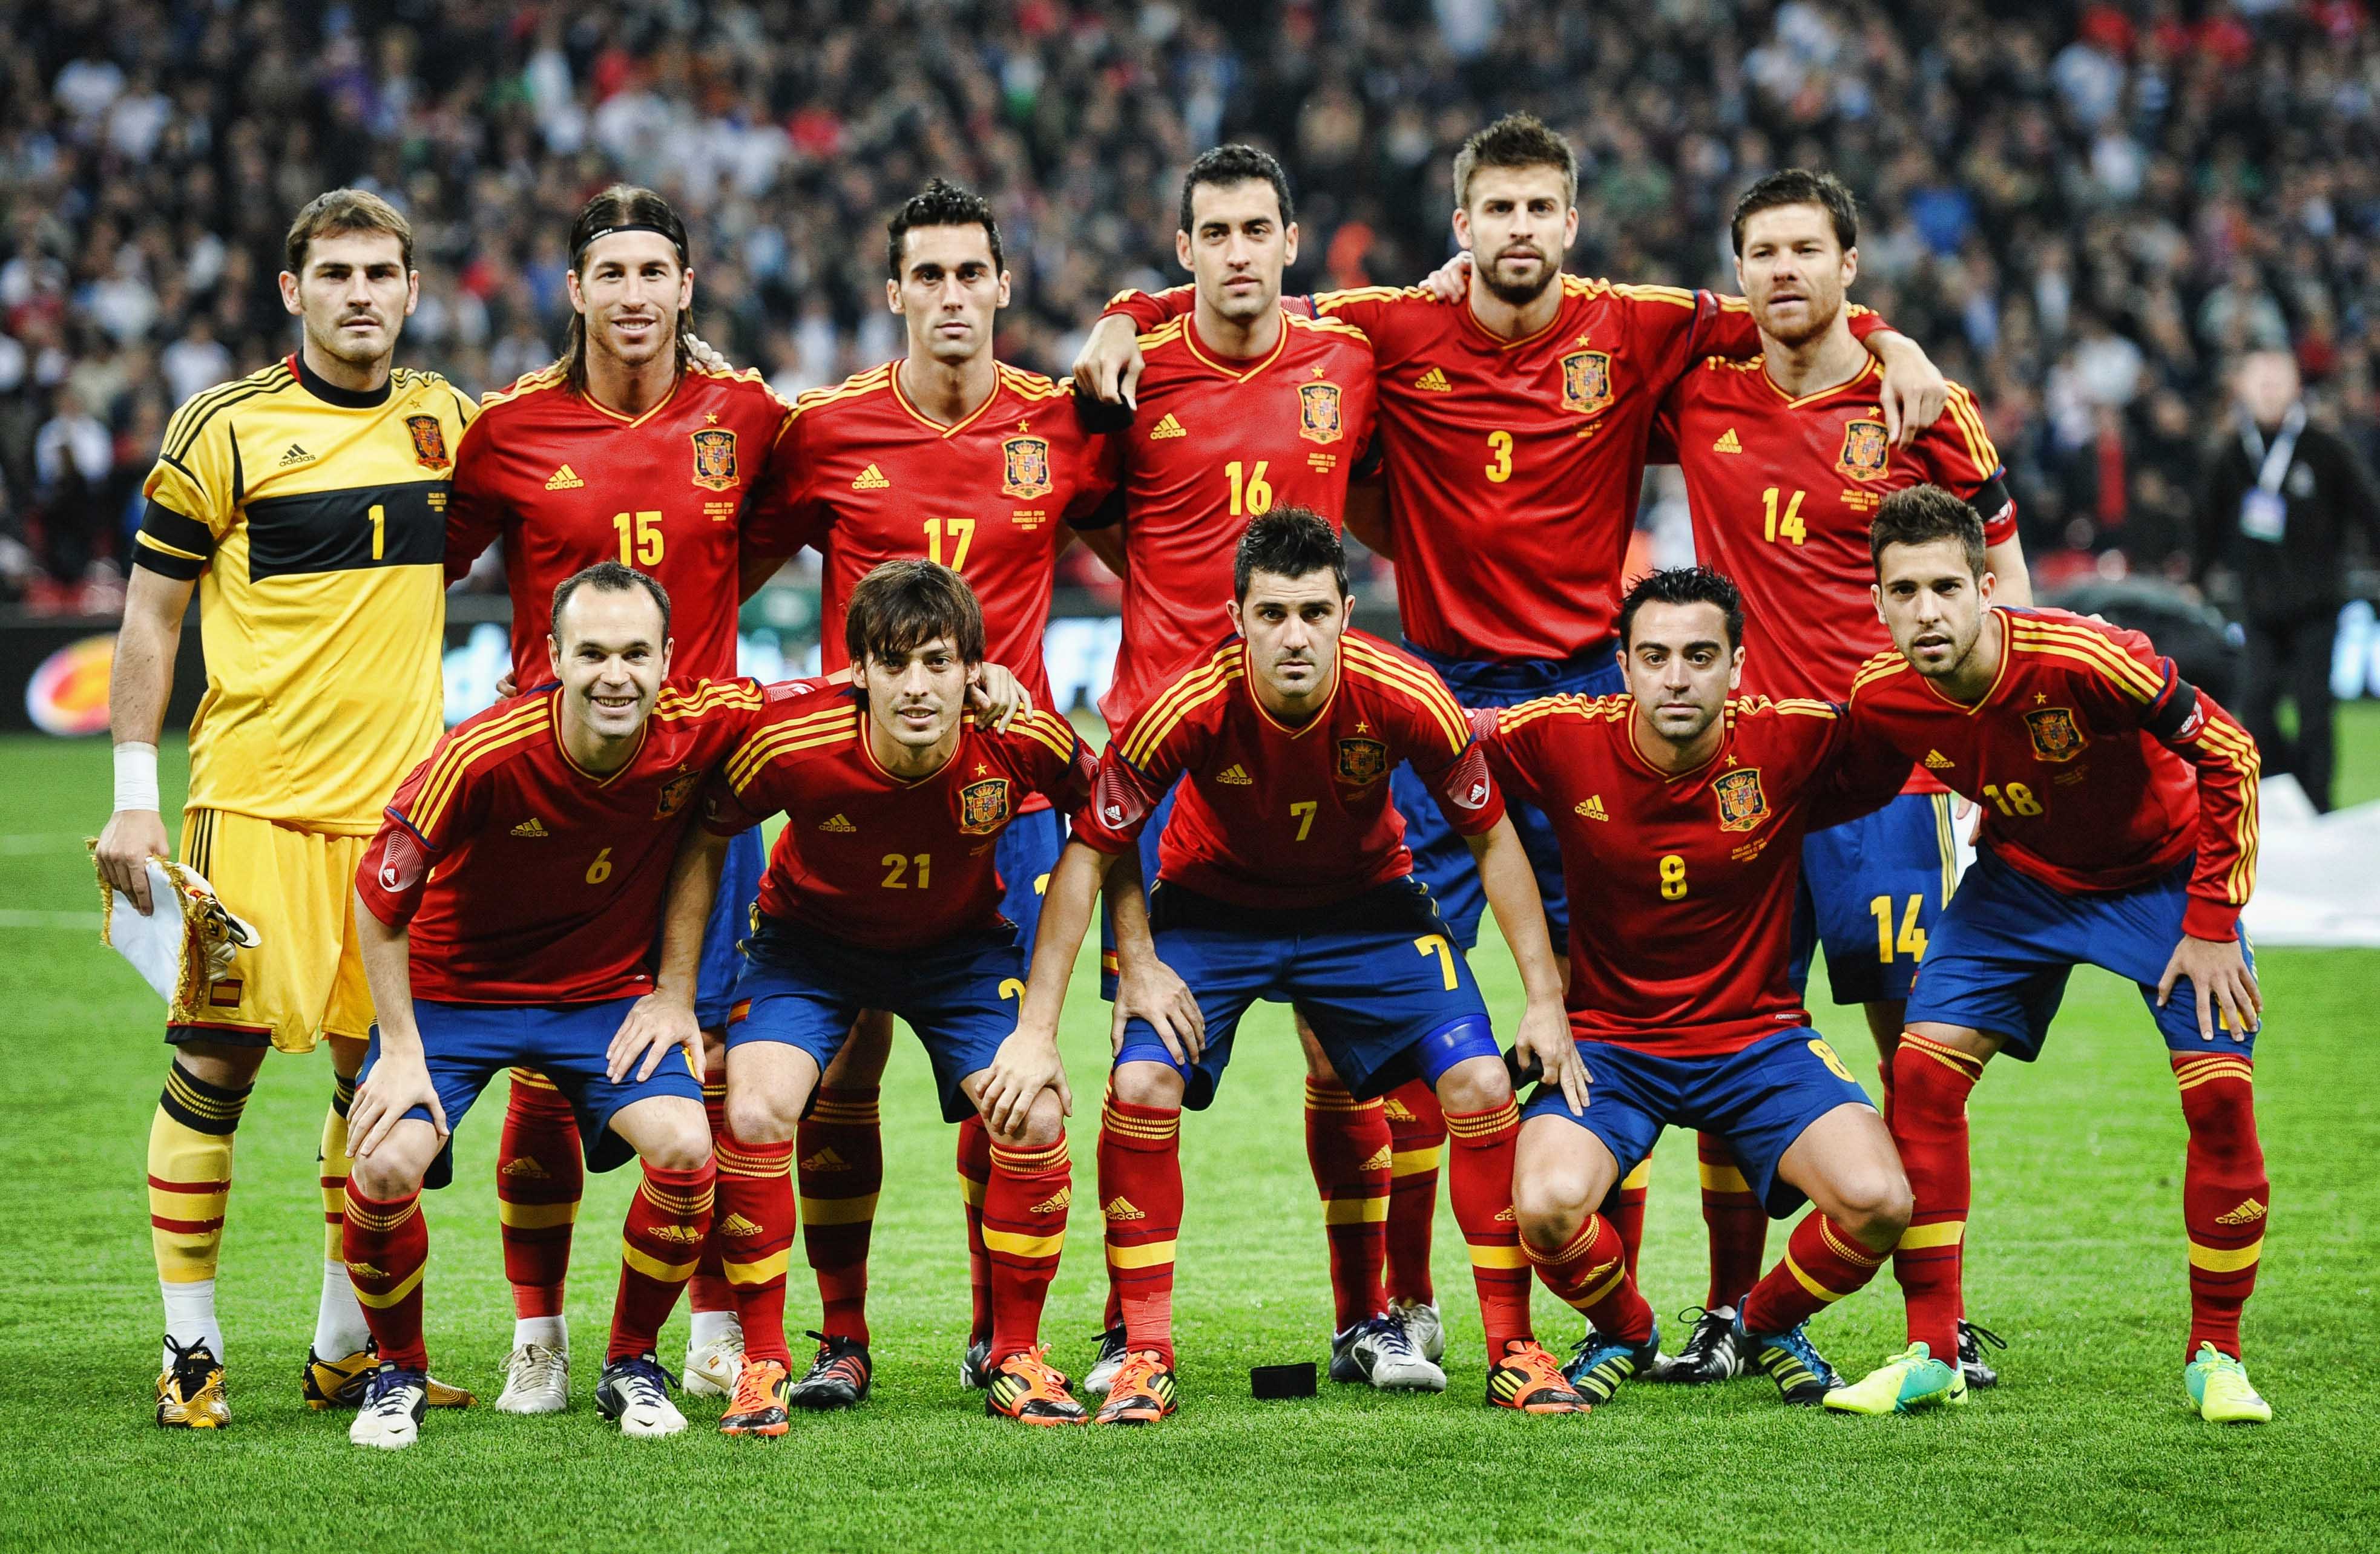 Скачать обои Сборная Испании По Футболу на телефон бесплатно